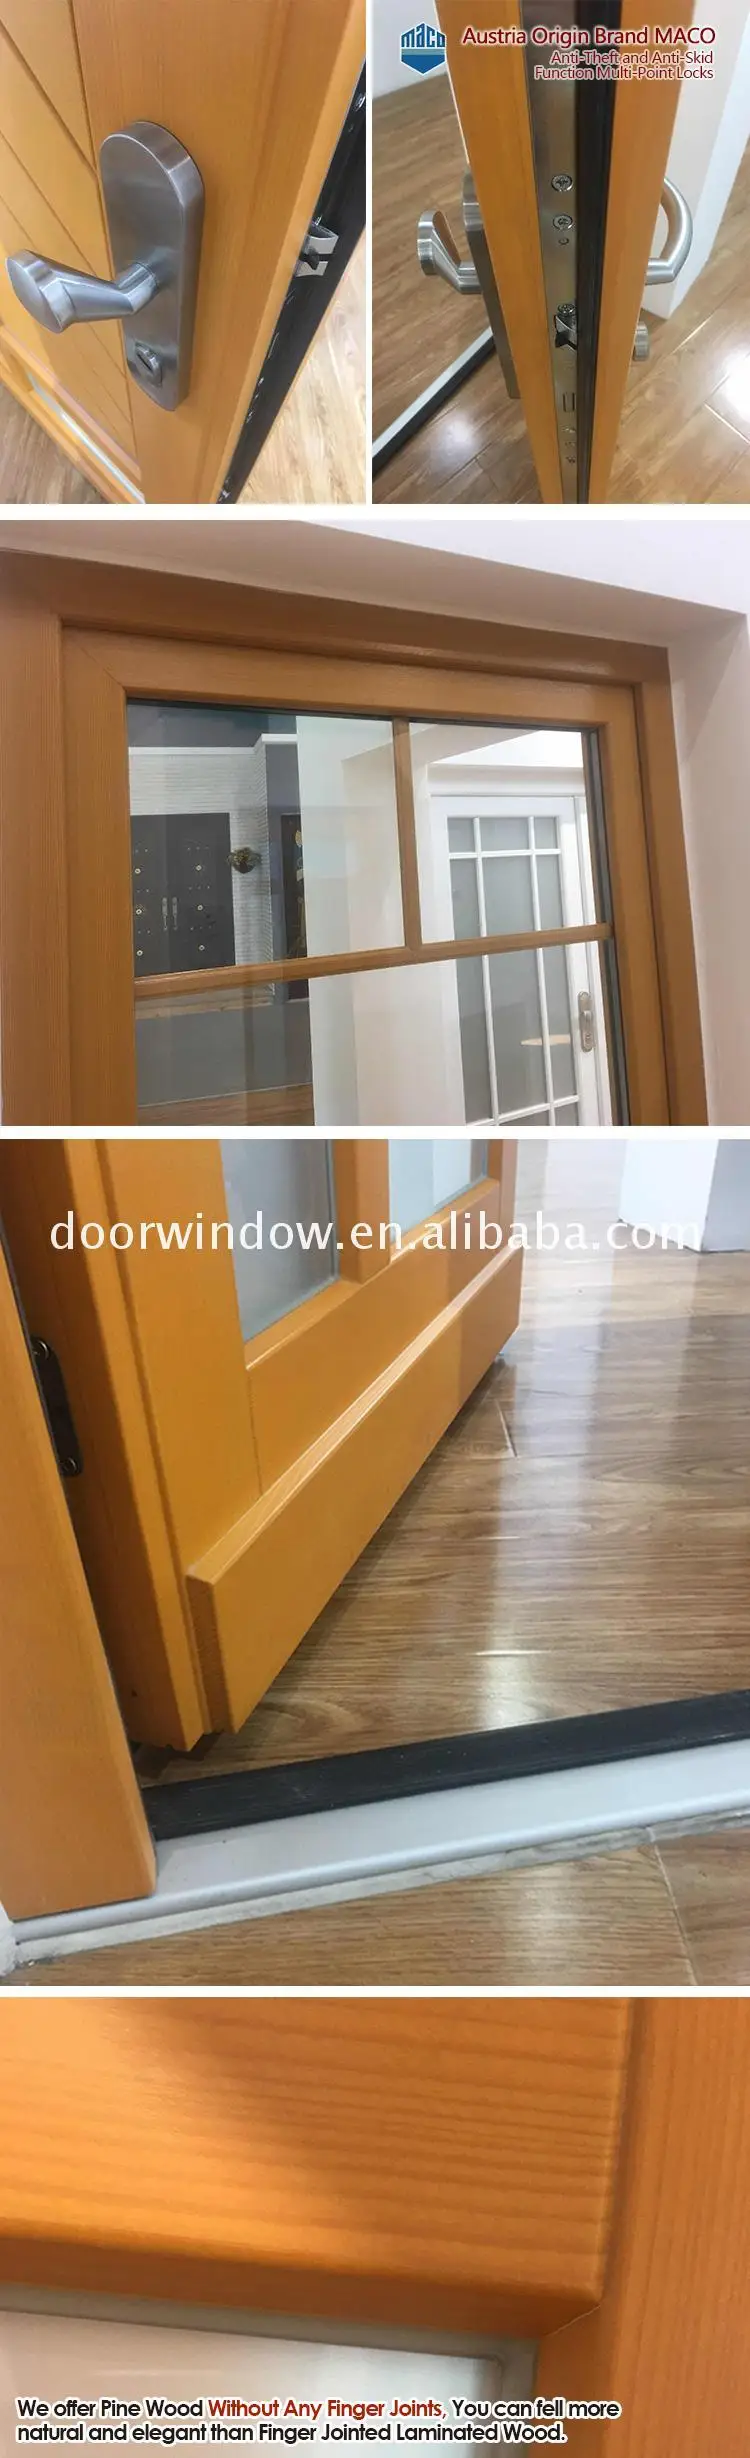 Factory Directly Supply depot & home doorwin doors brown aluminium bronze